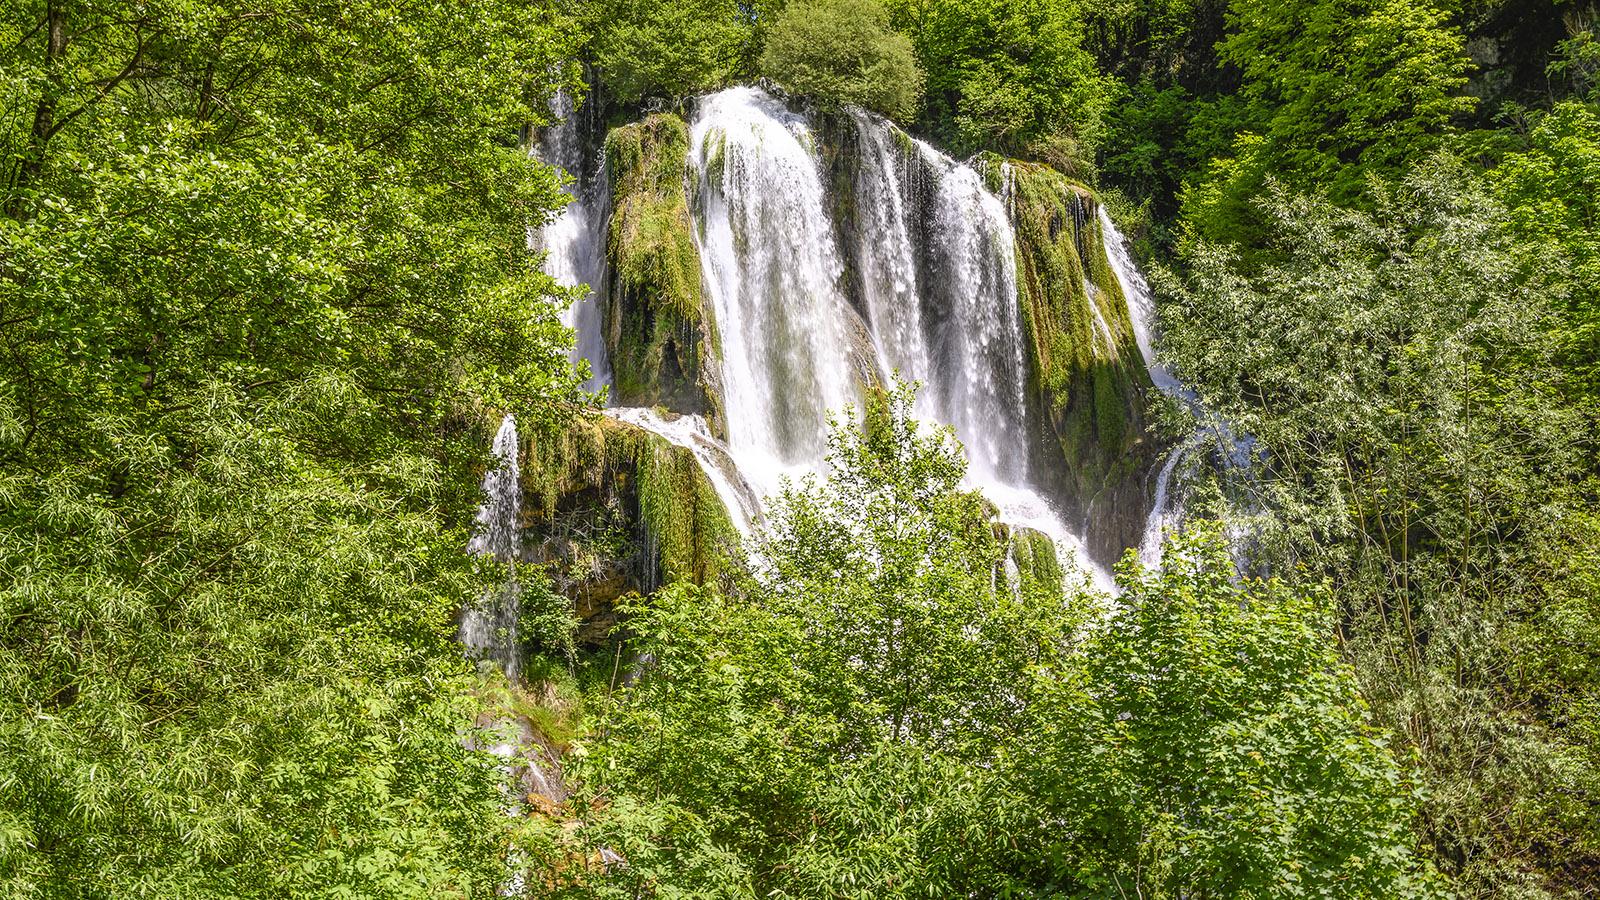 Beeindruckend: der Wasserfall von Glandieu. Foto: Hilke Maunder